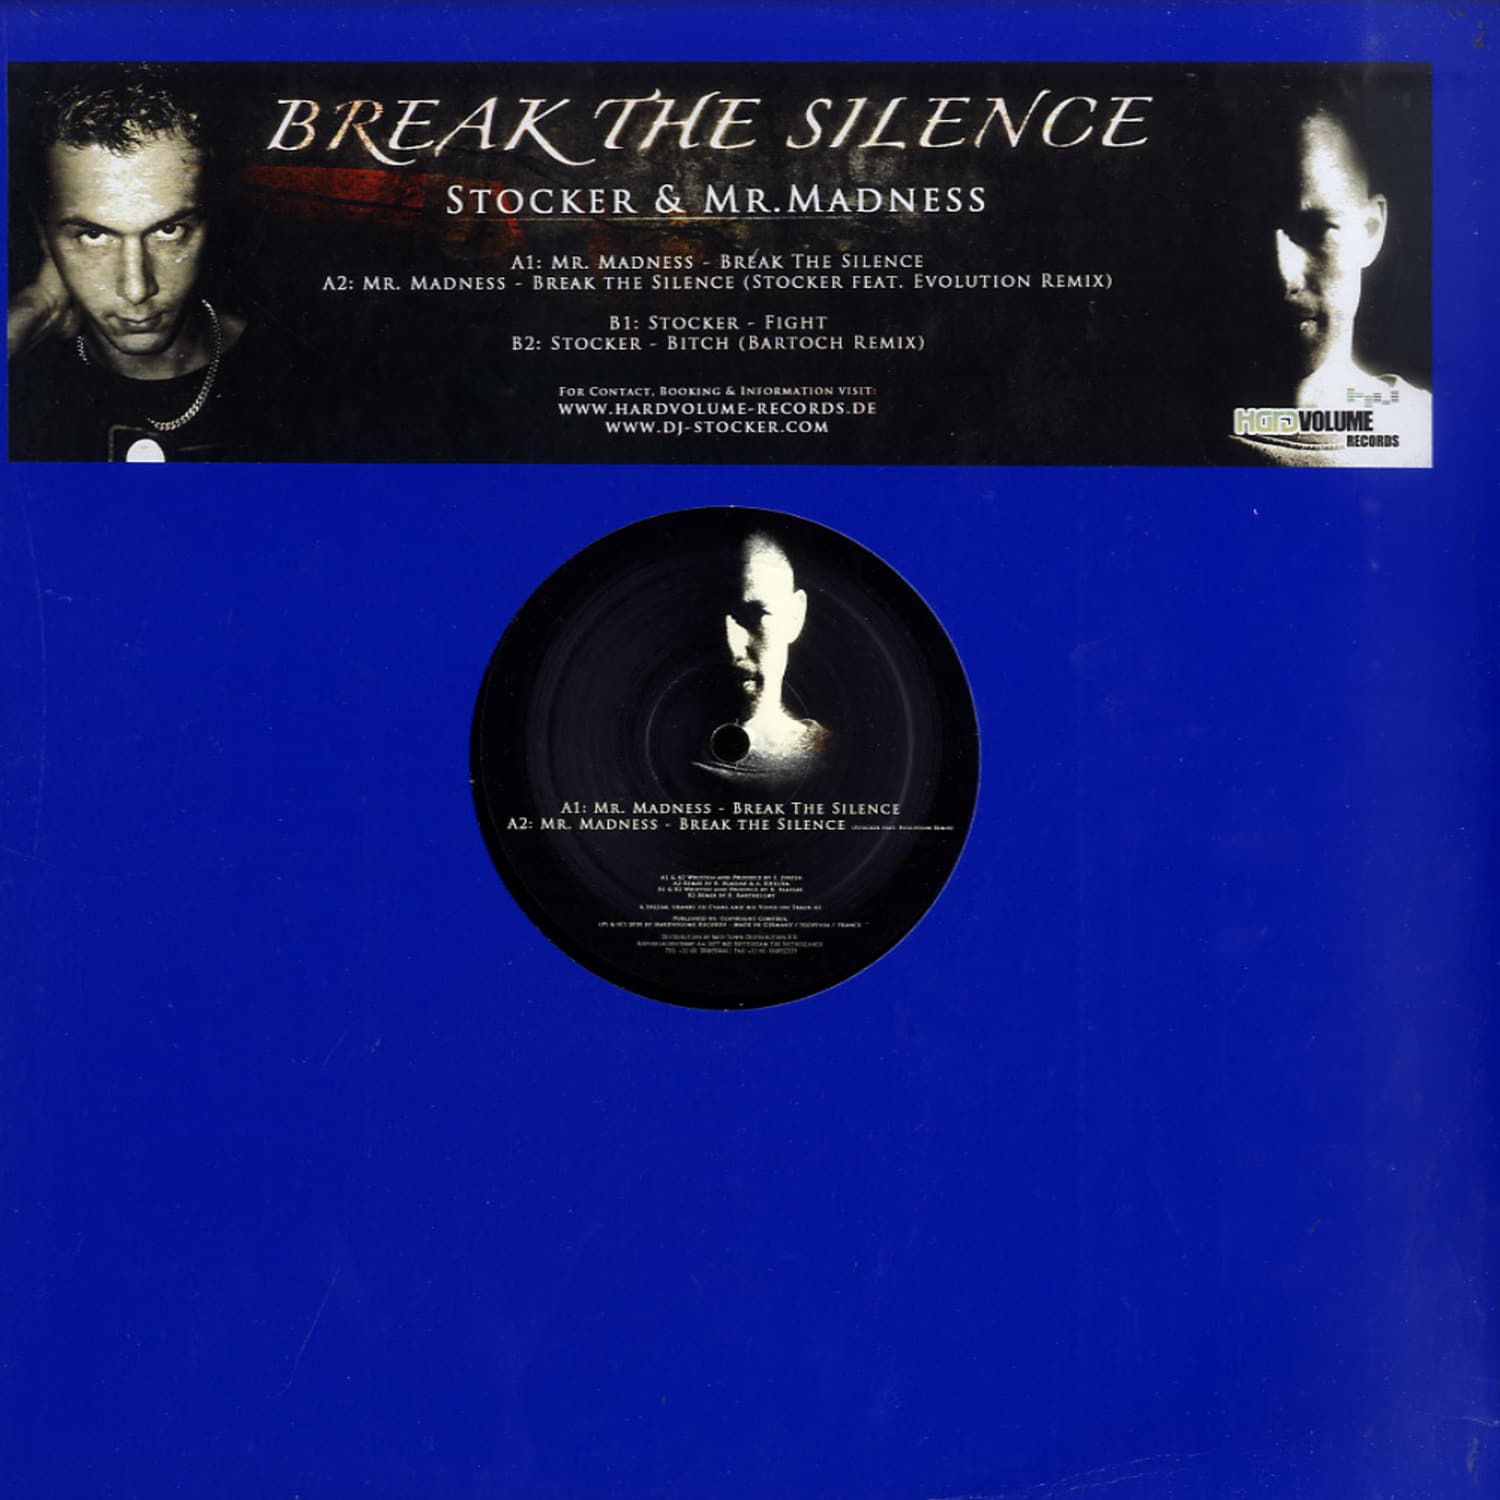 Stocker & Mr. Madness - BREAK THE SILENCE